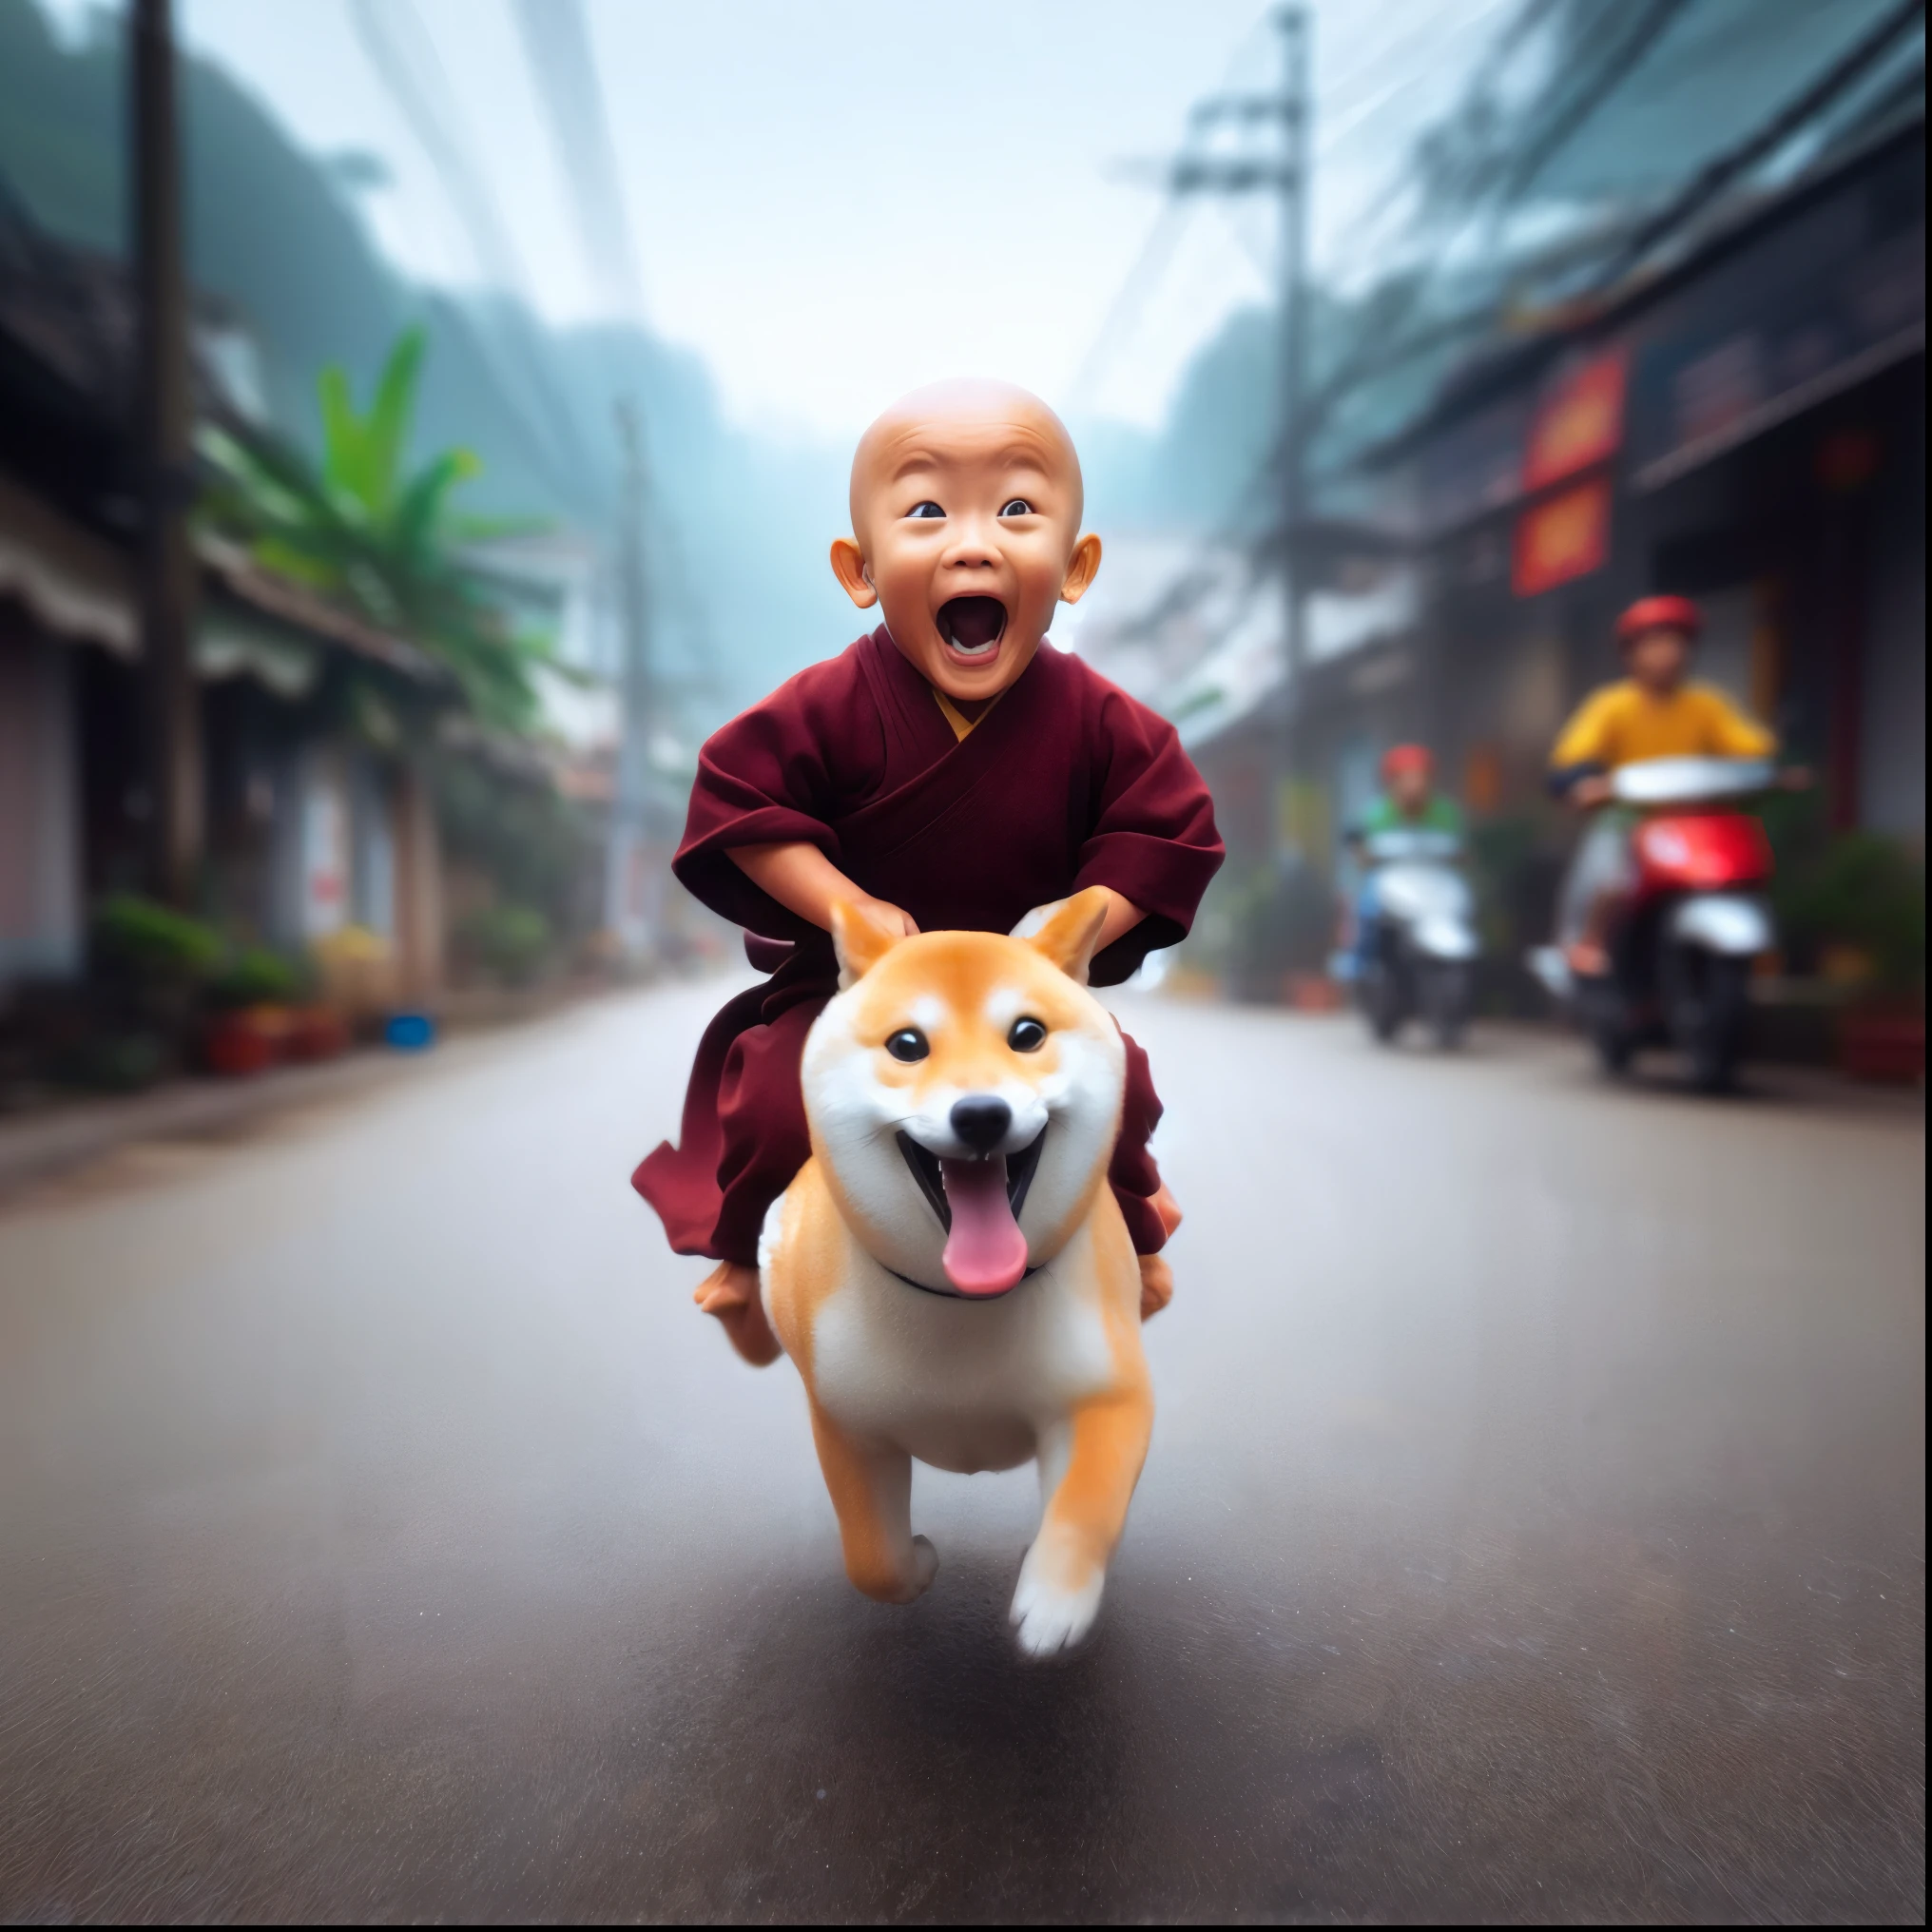 arafed image of a monge riding a dog on a street, budista, cachorro como um deus, 2 1 st century monge, profundidade incrível, Doge, budismo, Incrível, com seu cachorrinho hiperativo, obras de arte no estilo de guweiz, adorável pintura digital, monge, ele está muito feliz, pura diversão, inspirado em Shiba Kokan